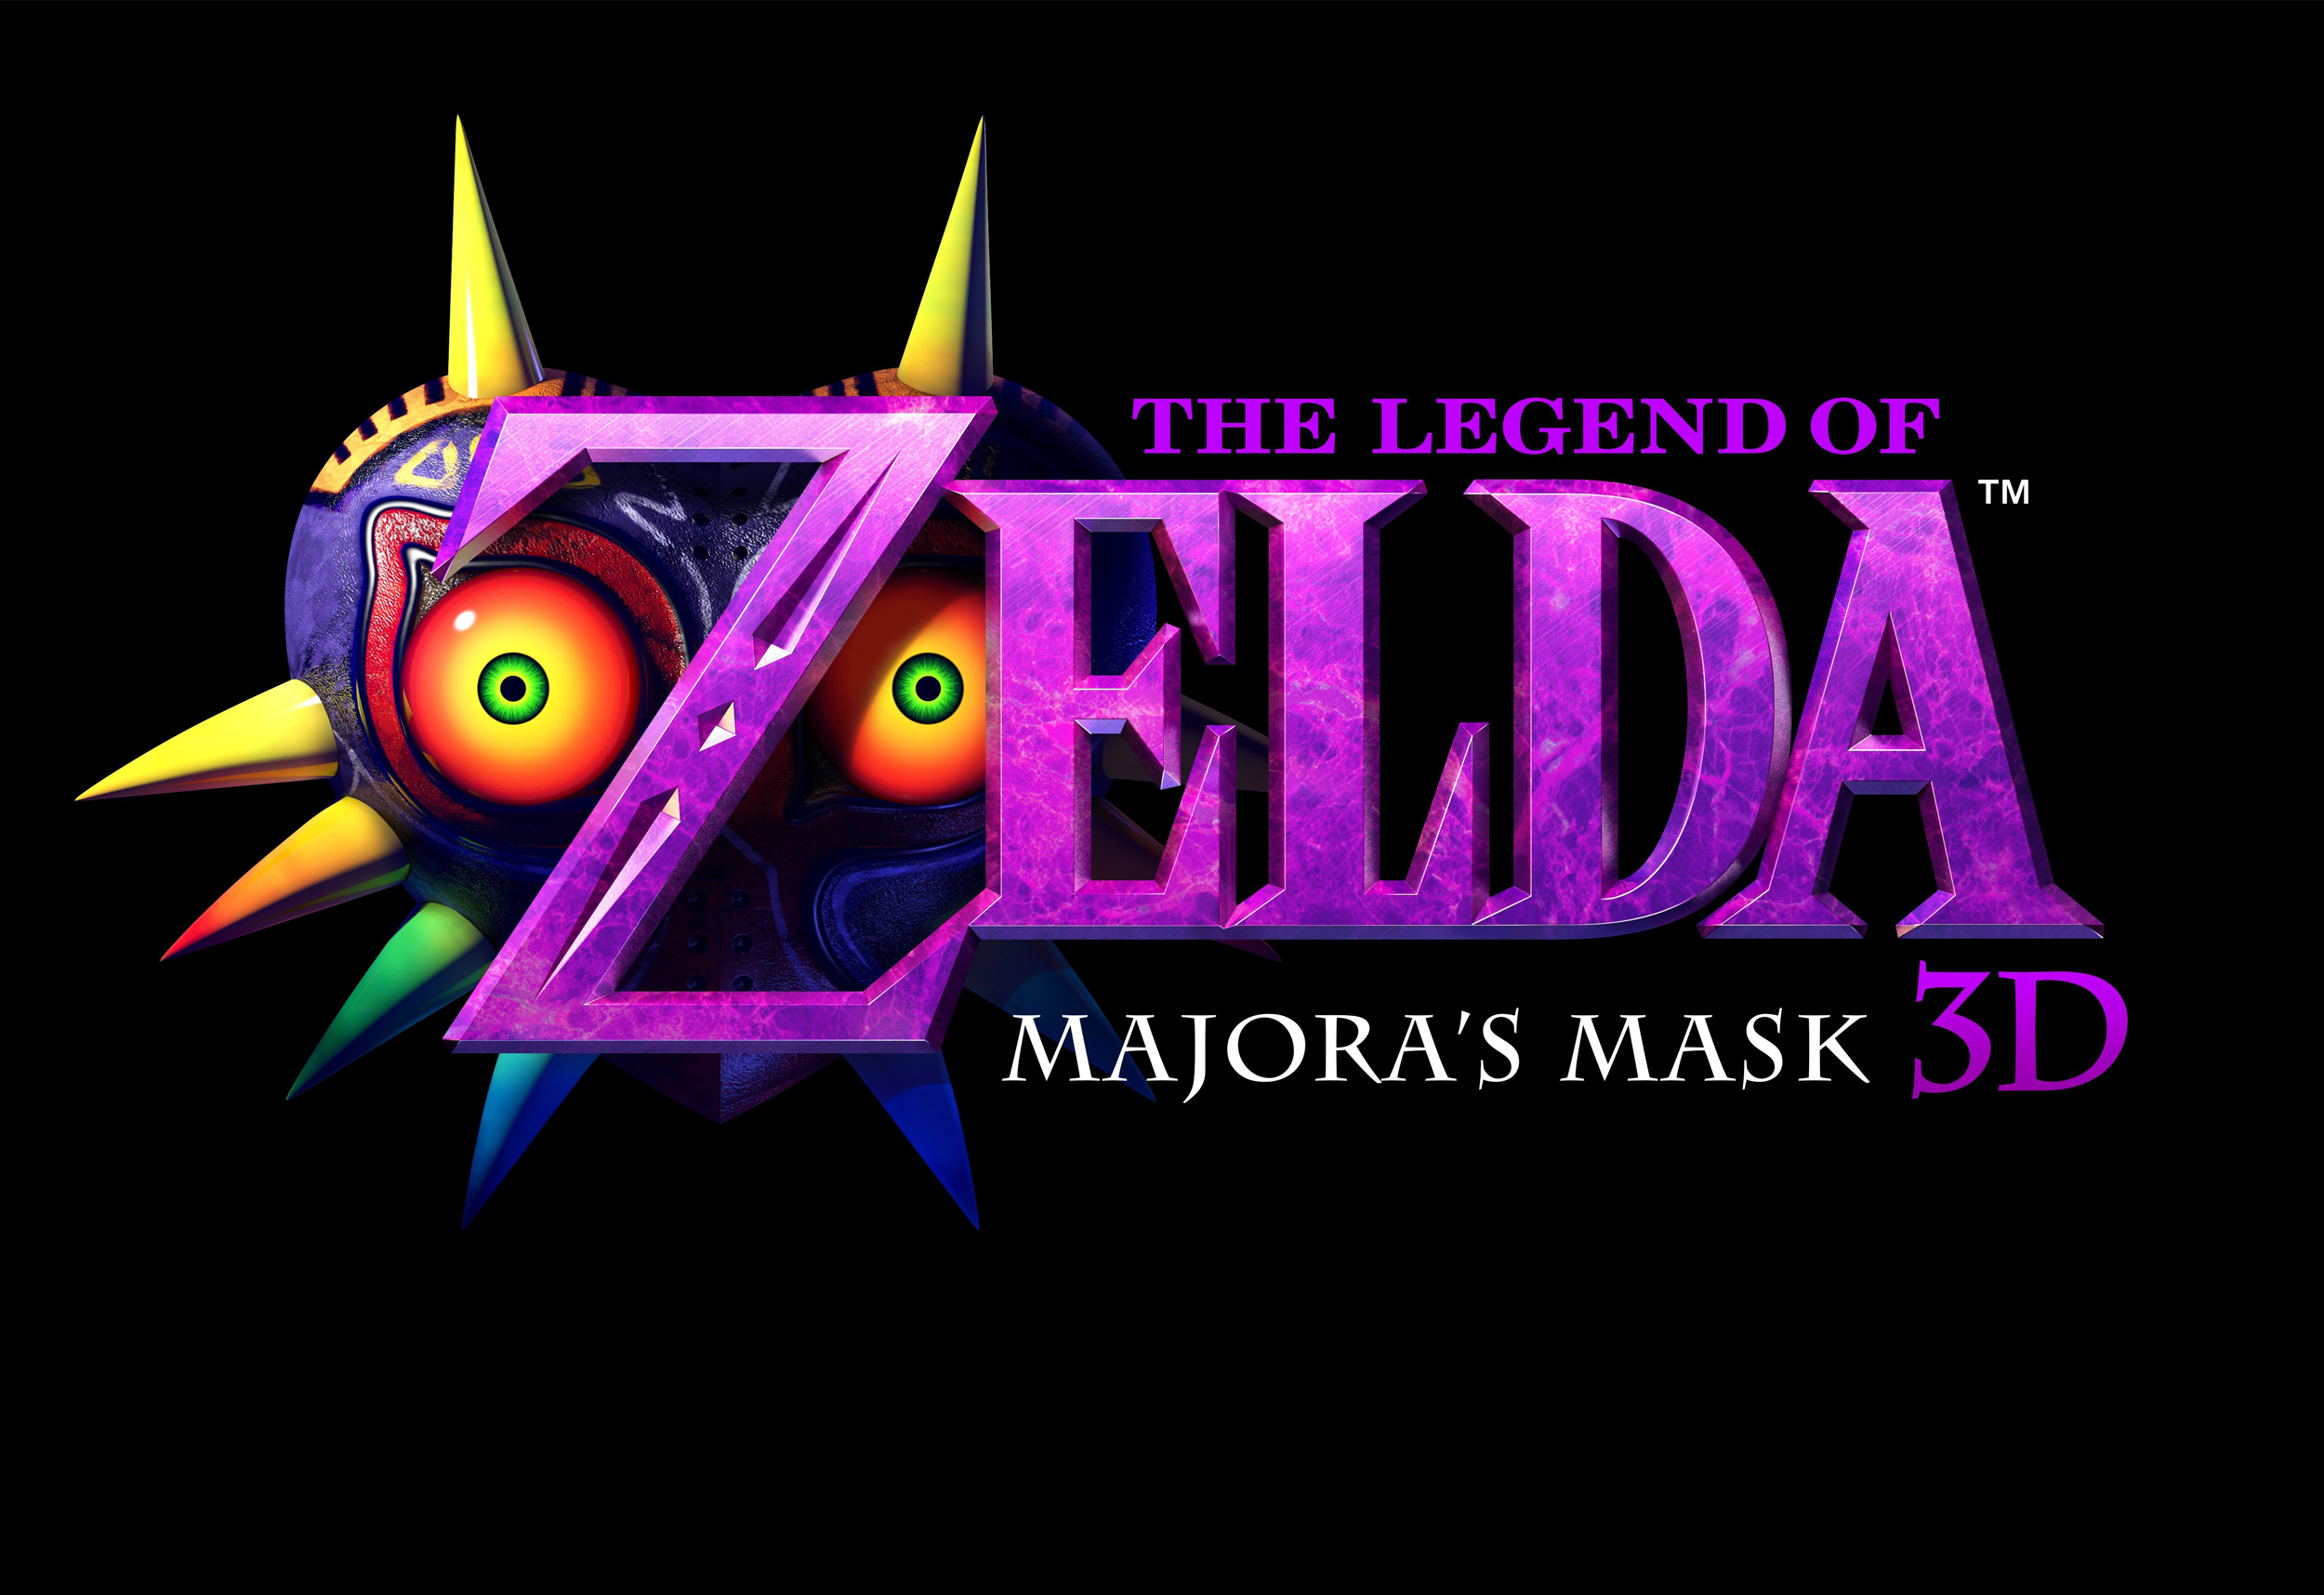 The Legend of Zelda: Majora’s Mask 3D Descends on Nintendo 3DS in ...